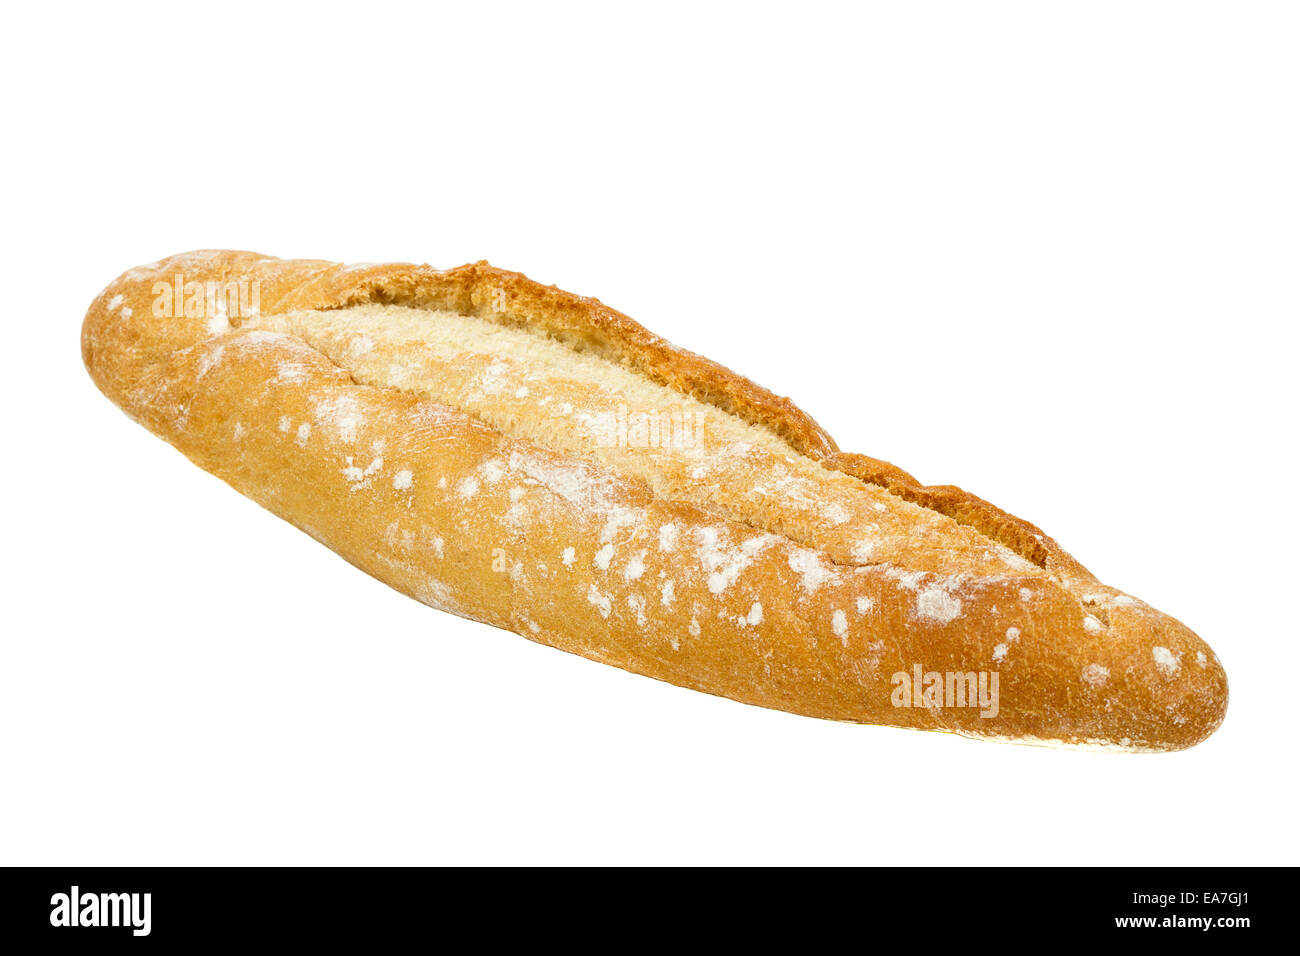 Pane fresco isolato su uno sfondo bianco Foto Stock